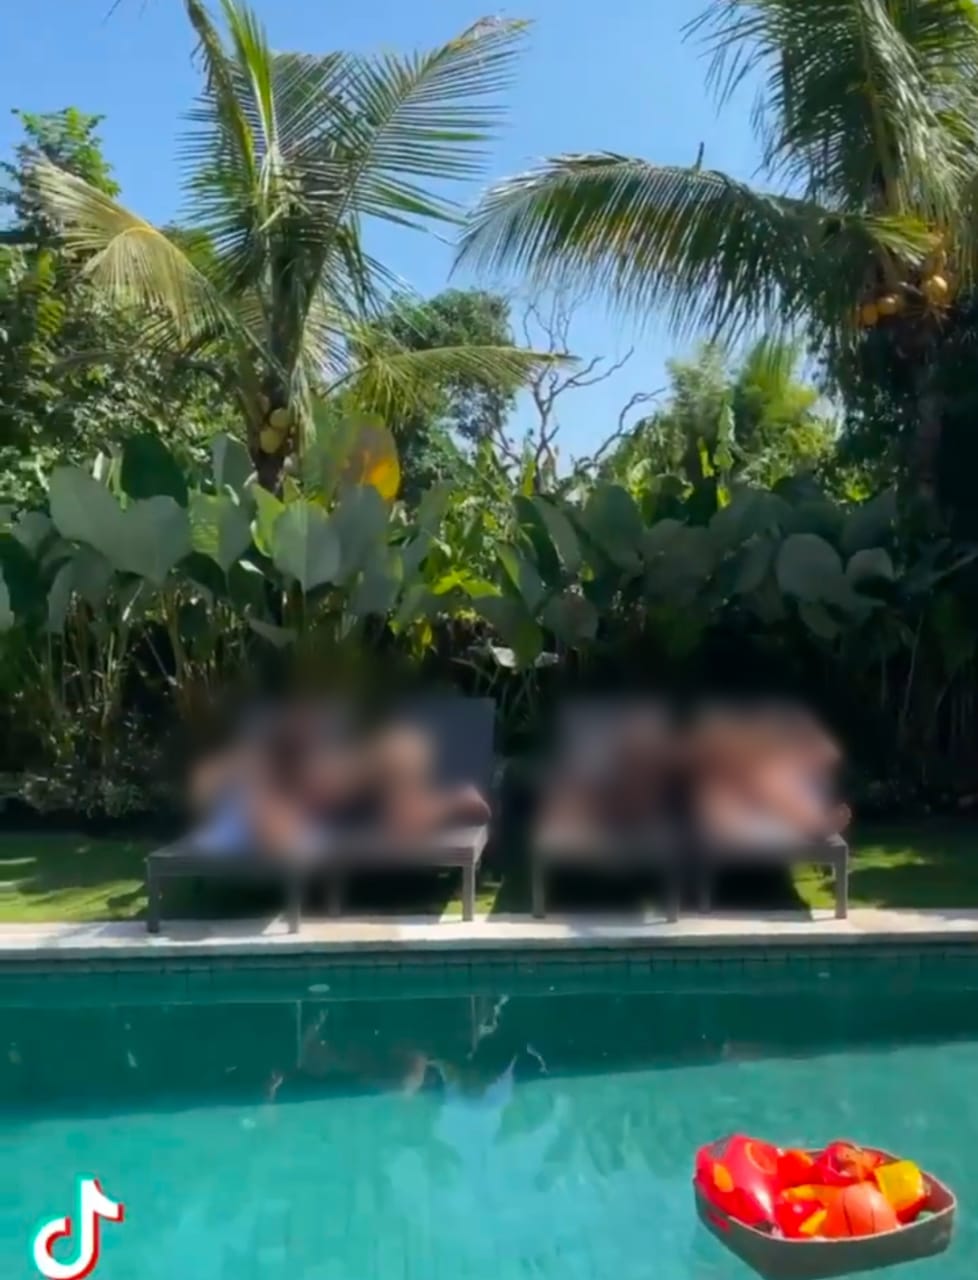 Tangkapan layar video seks bule di Bali yang beredar viral di media sosial. Foto: Ist